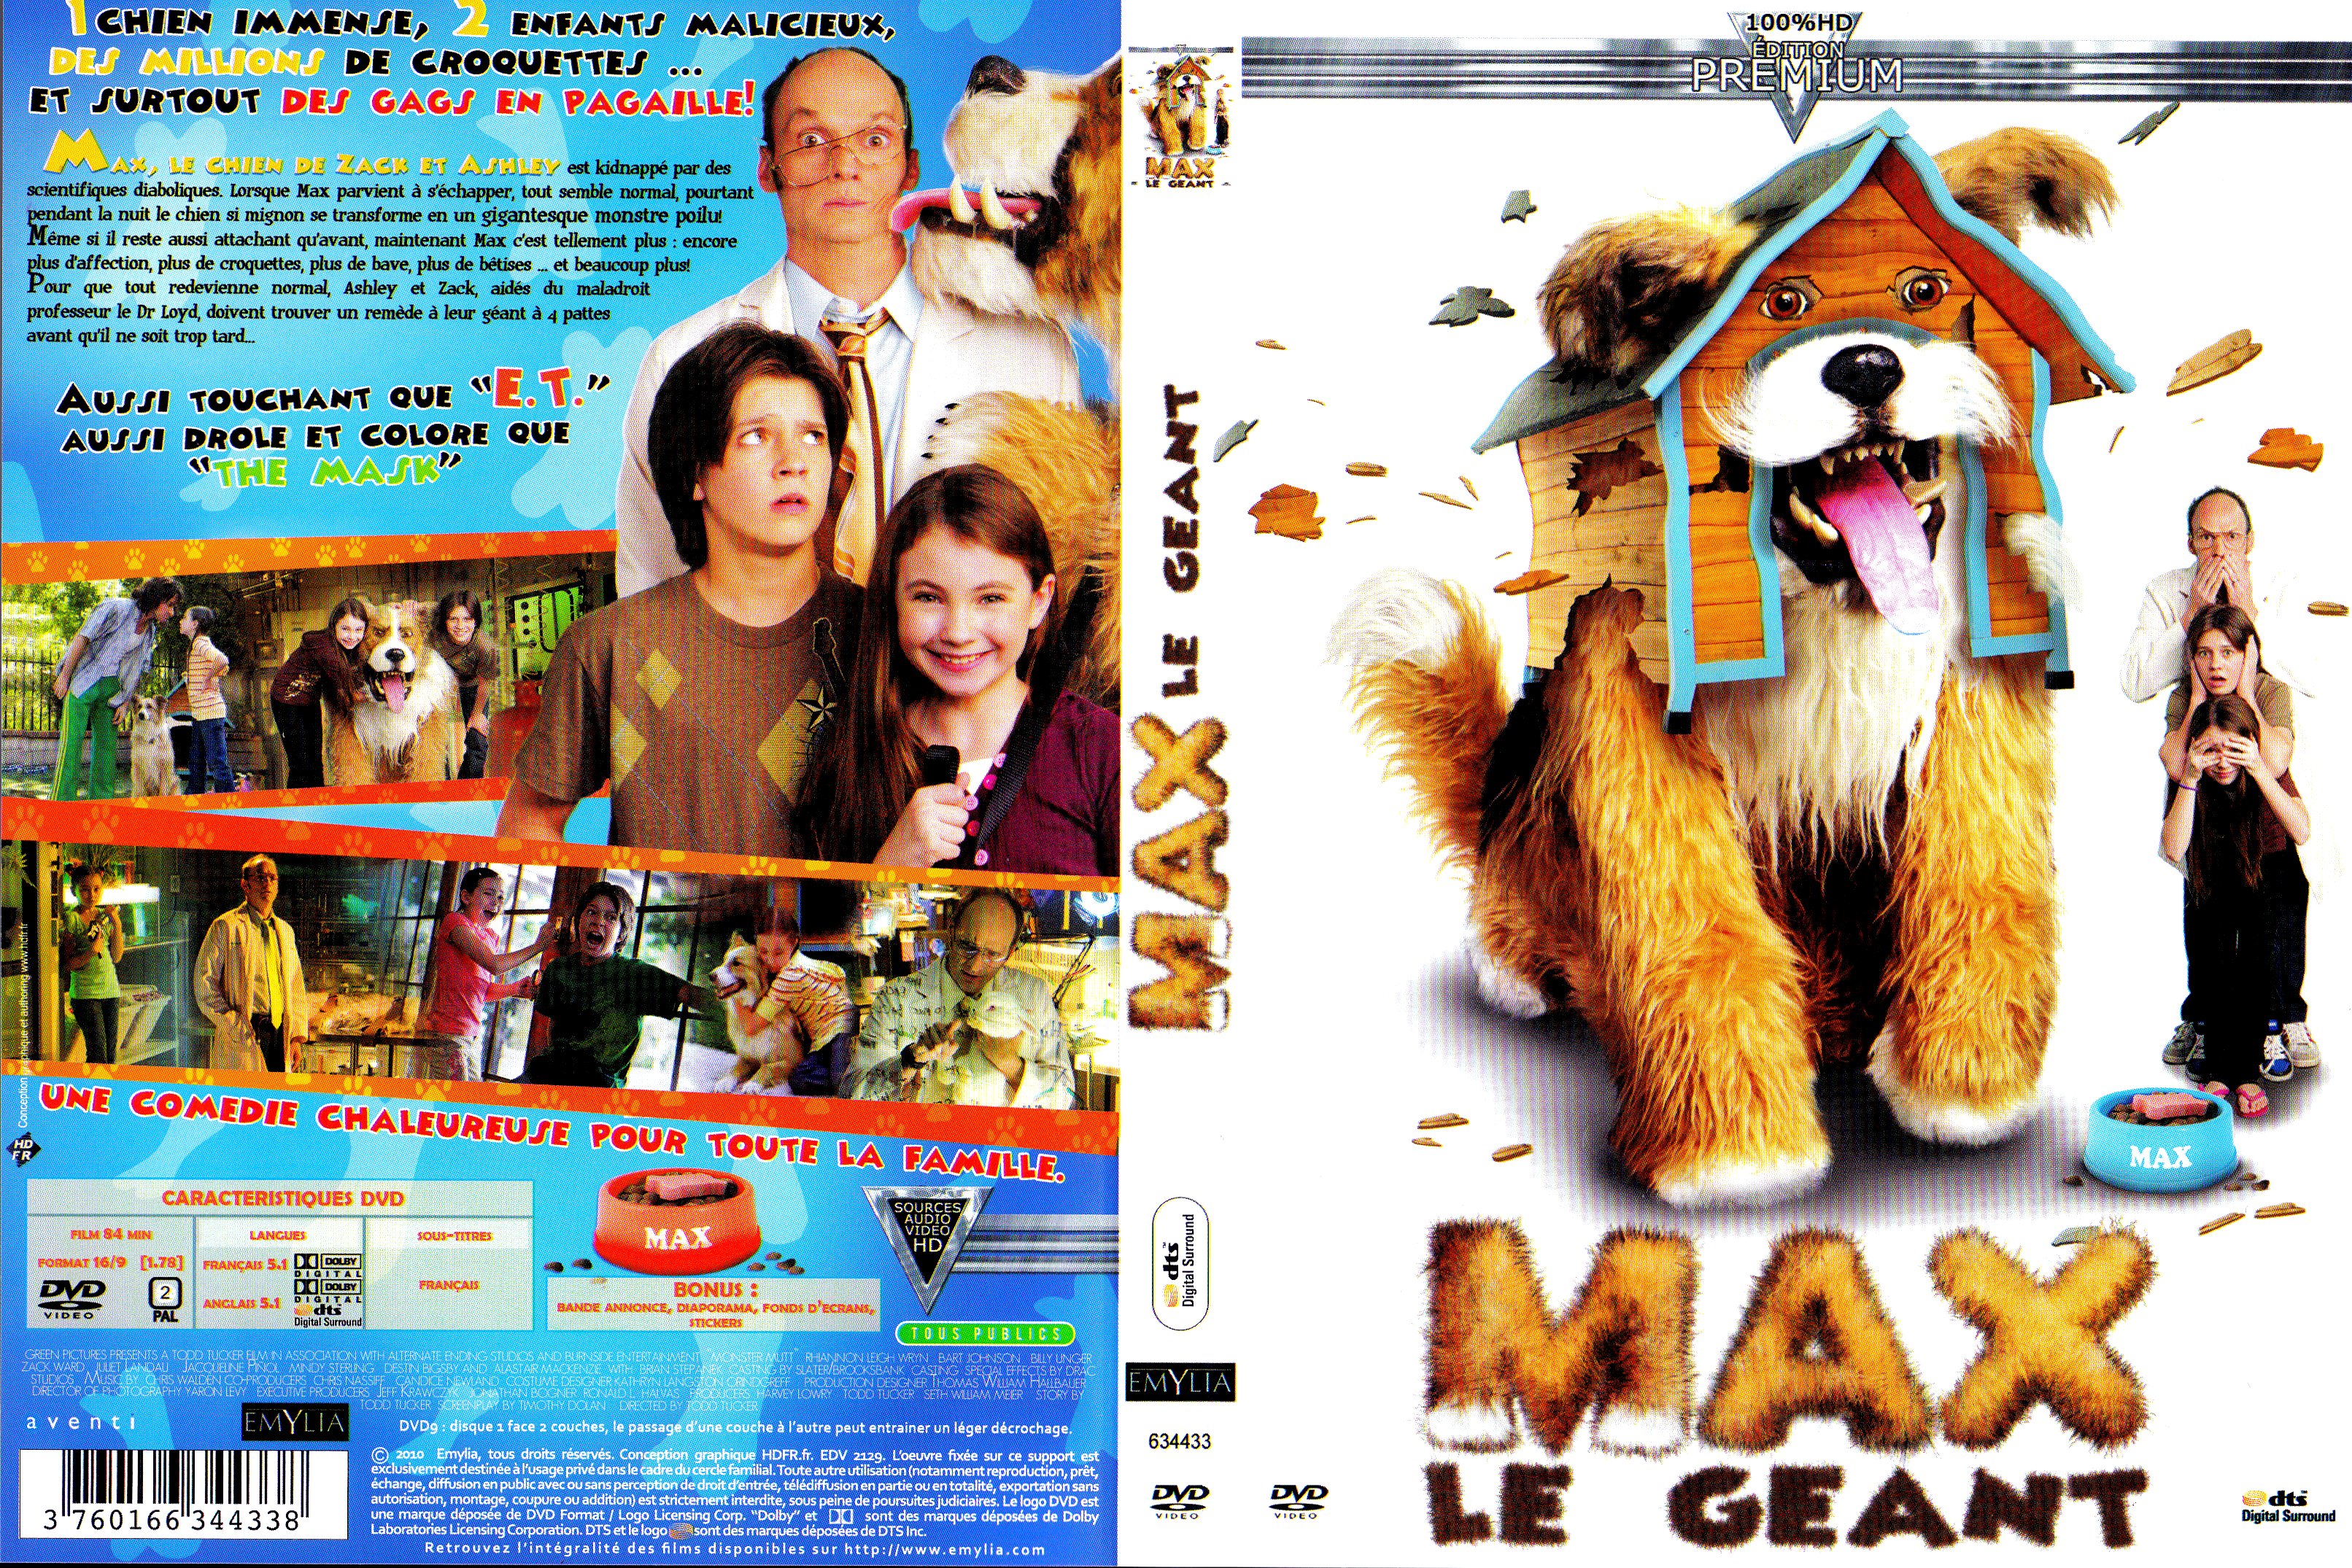 Jaquette DVD Max le Gant